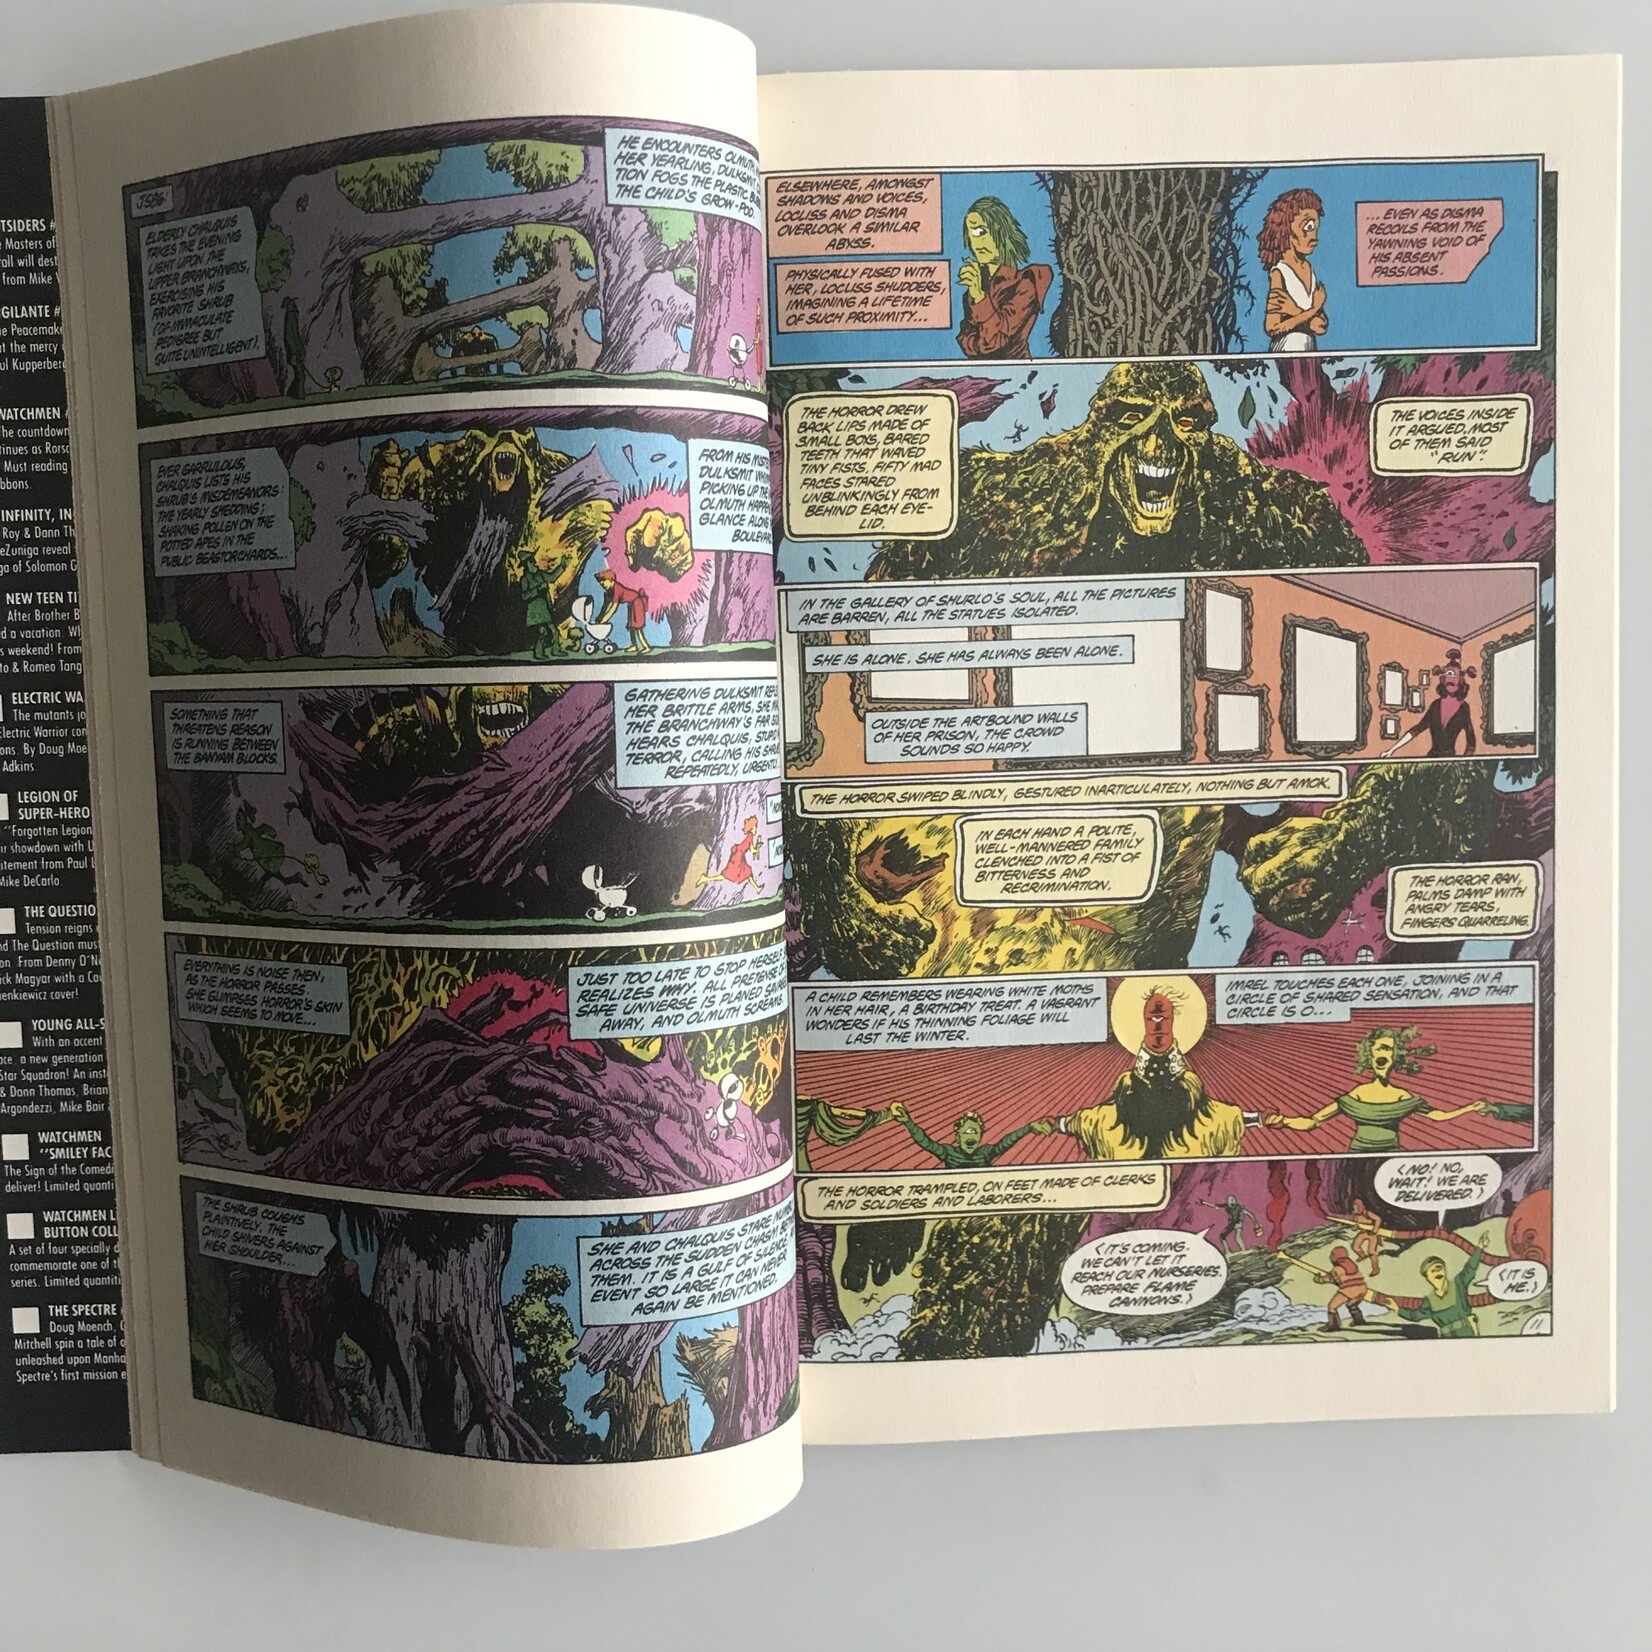 Swamp Thing - Vol. 2 #61 June 1987 - Comic Book (VG)